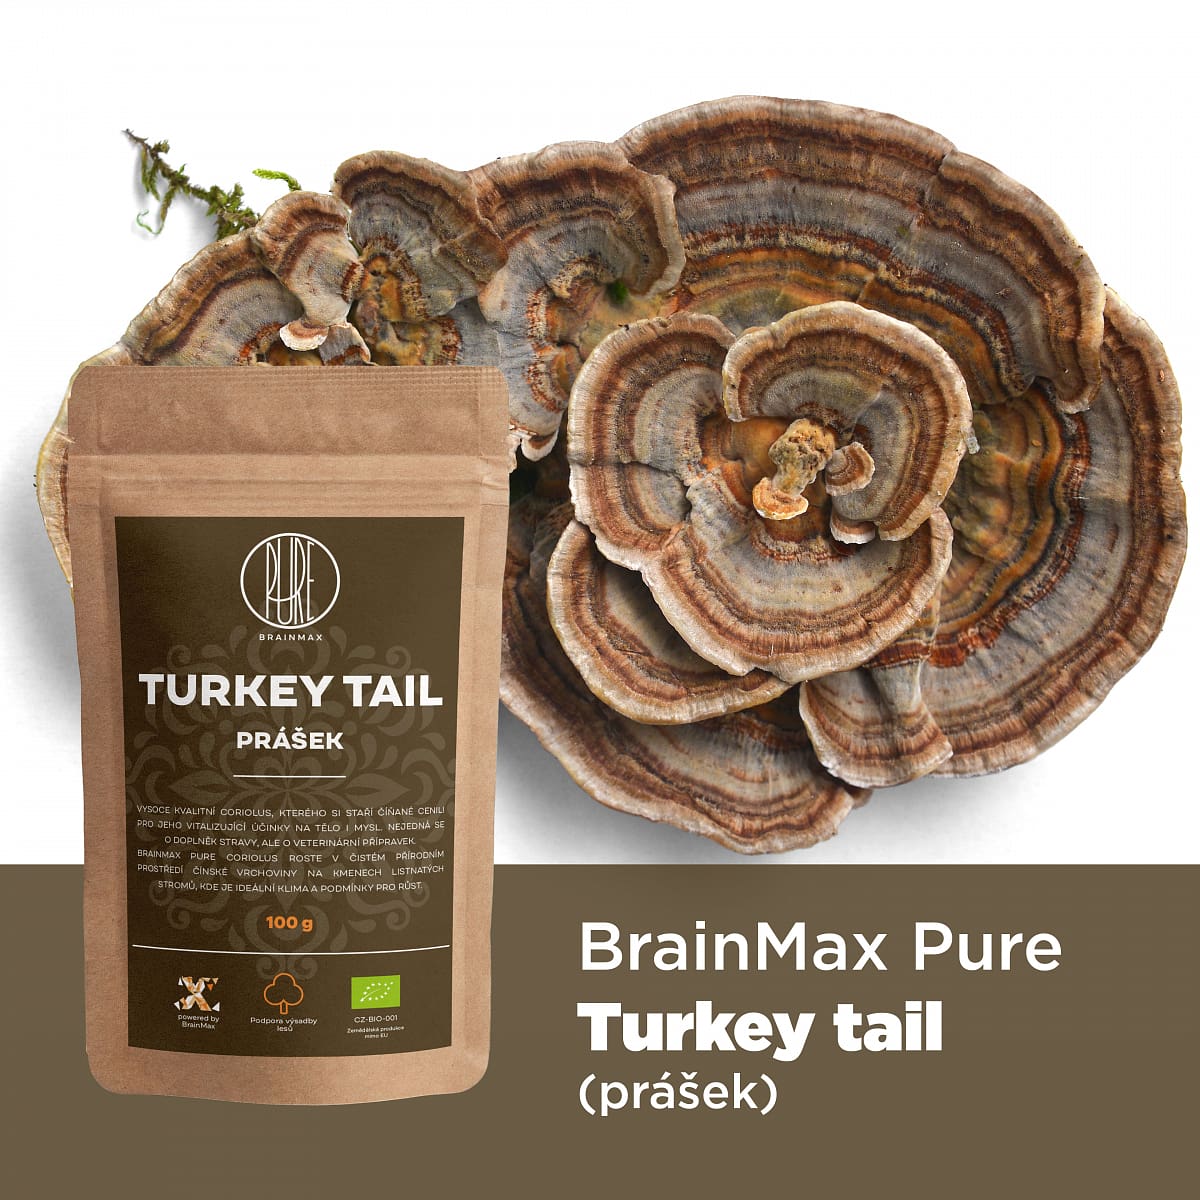 BrainMax Pure Turkey Tail (Coriolus) prášek, BIO, 100g *CZ-BIO-001 certifikát